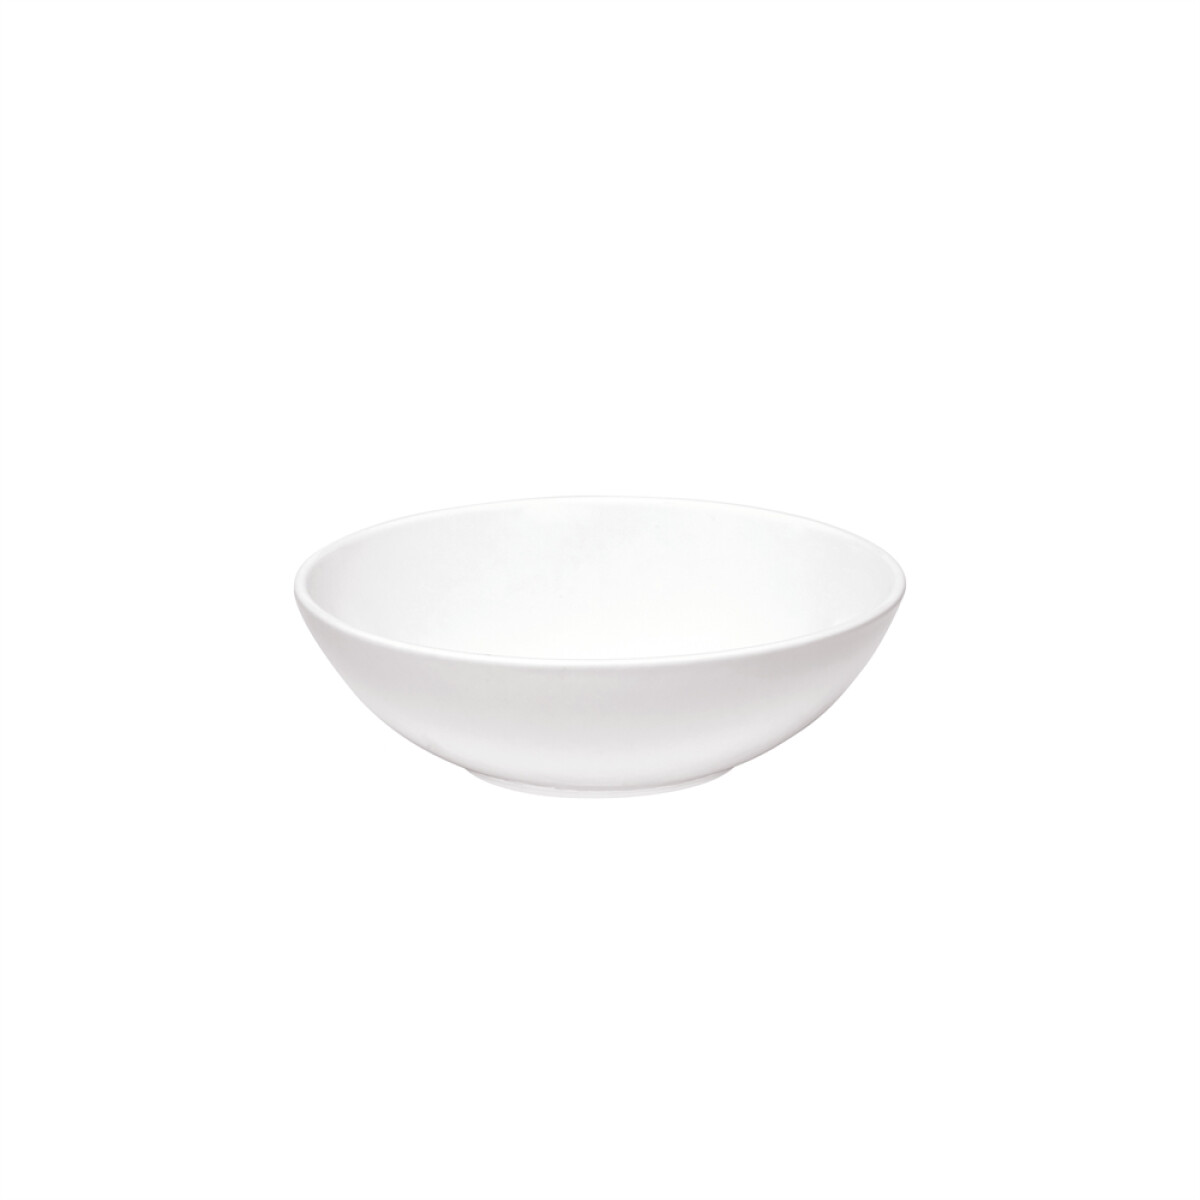 Керамична купа за салата EMILE HENRY INDIVIDUAL SALAD BOWL - Ø 15,5 см, цвят бял